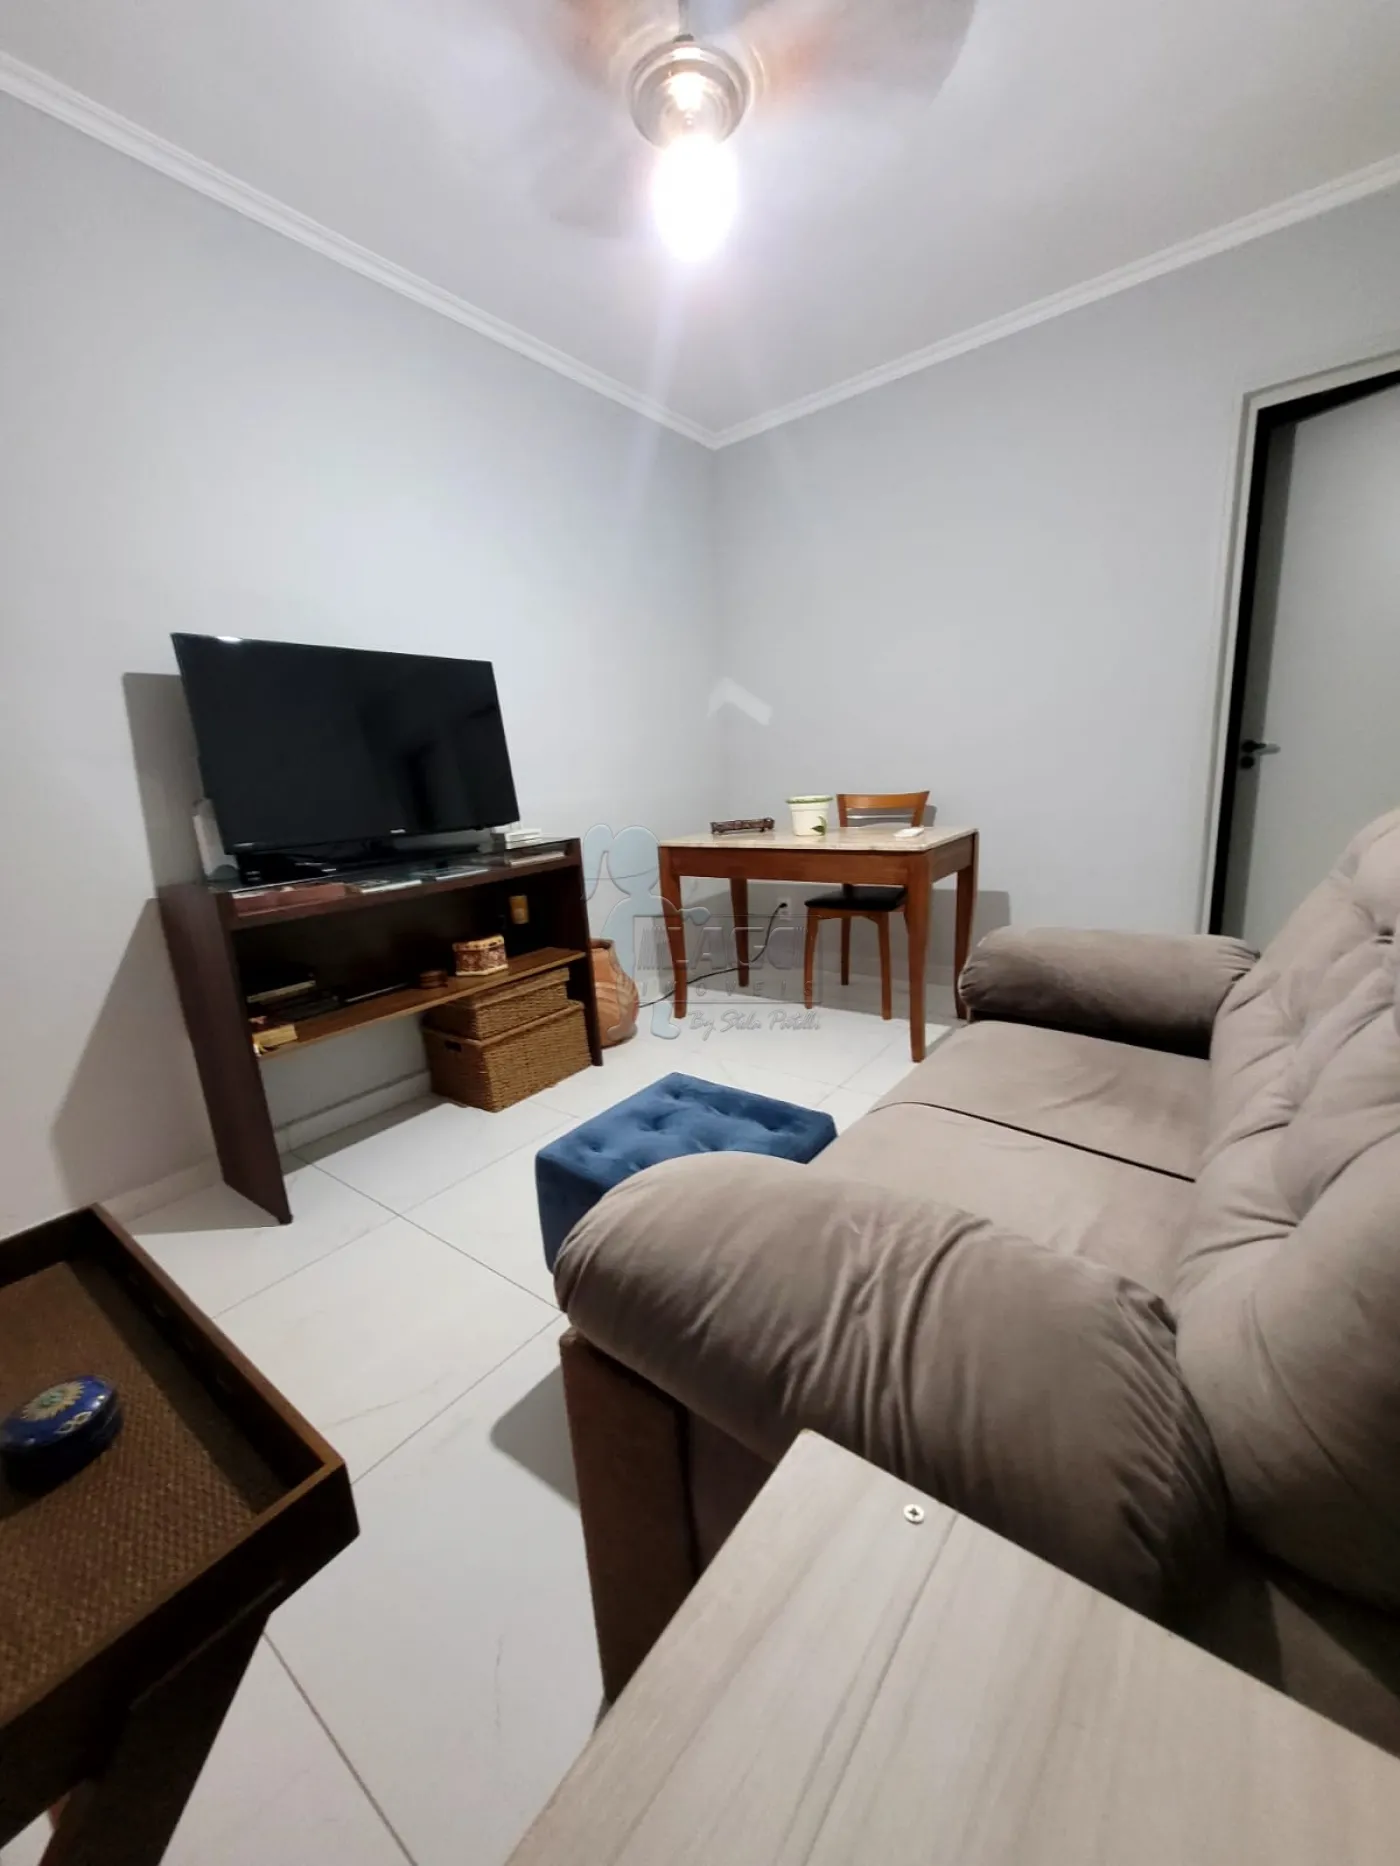 Comprar Apartamento / Padrão em Ribeirão Preto R$ 115.000,00 - Foto 2